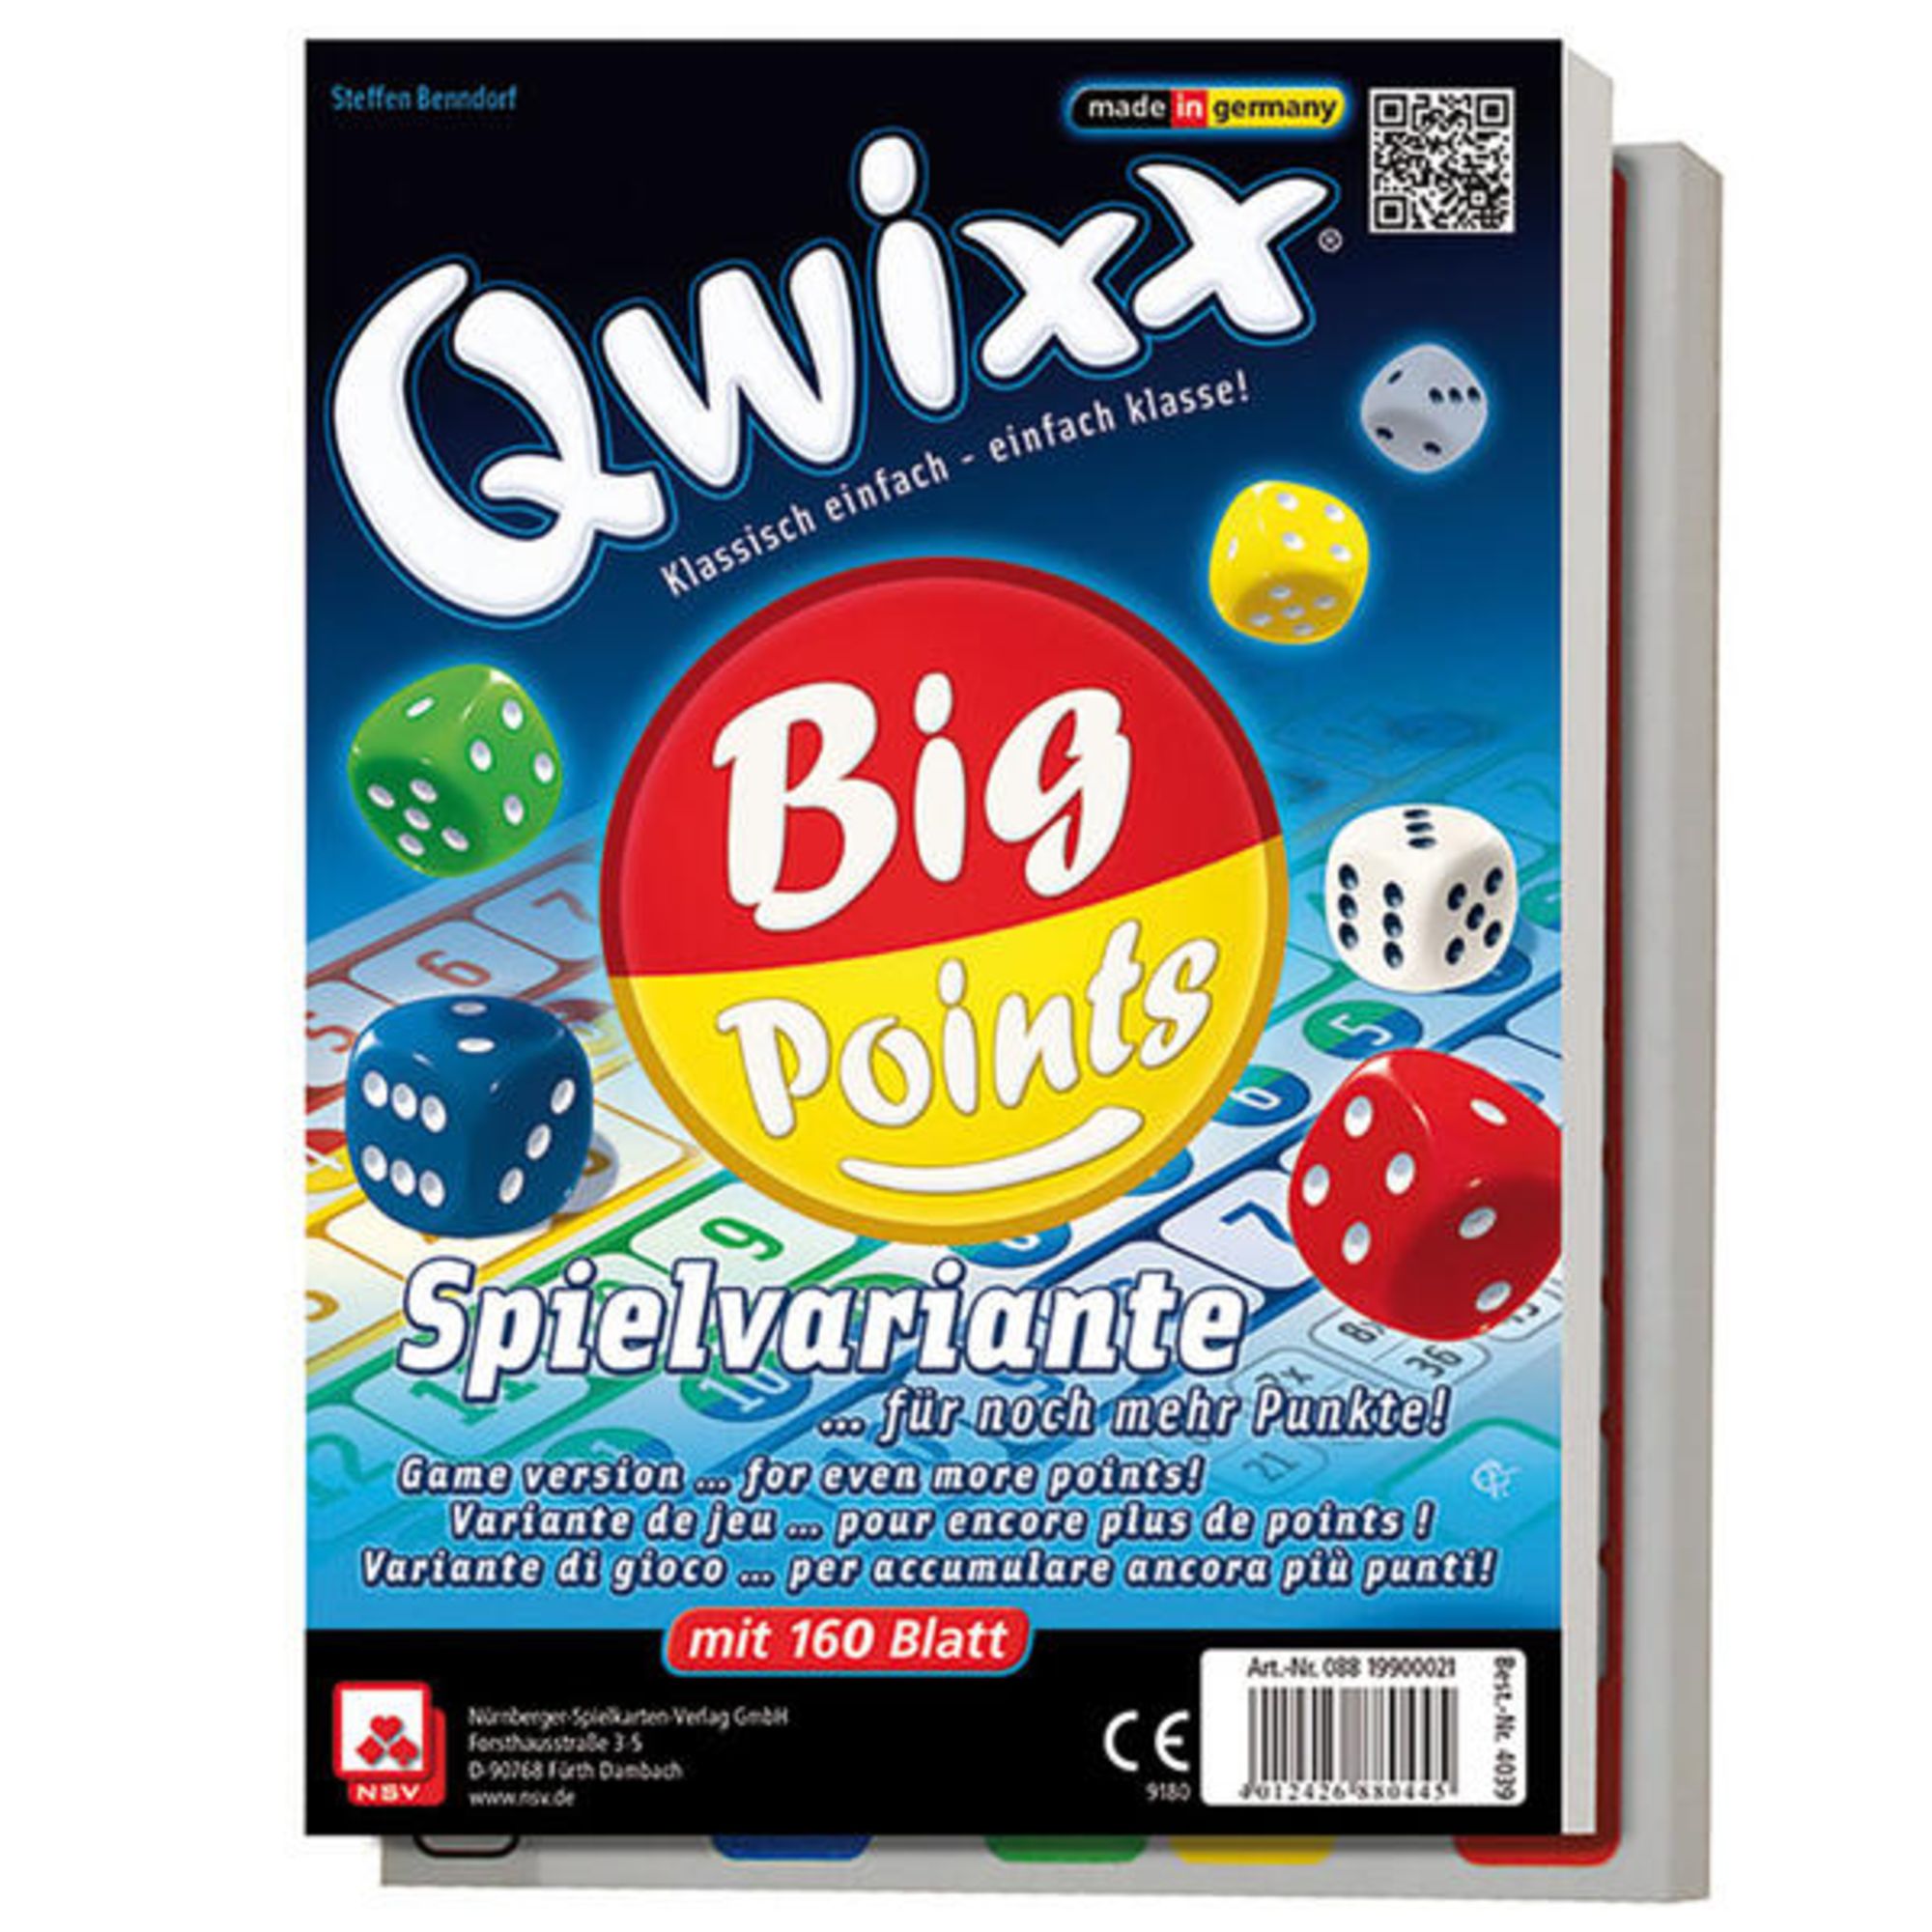 im Blatt 160 Qwixx Big Points, noch kaufen 2er-Pack Spielwaren mehr - für Punkte!\'